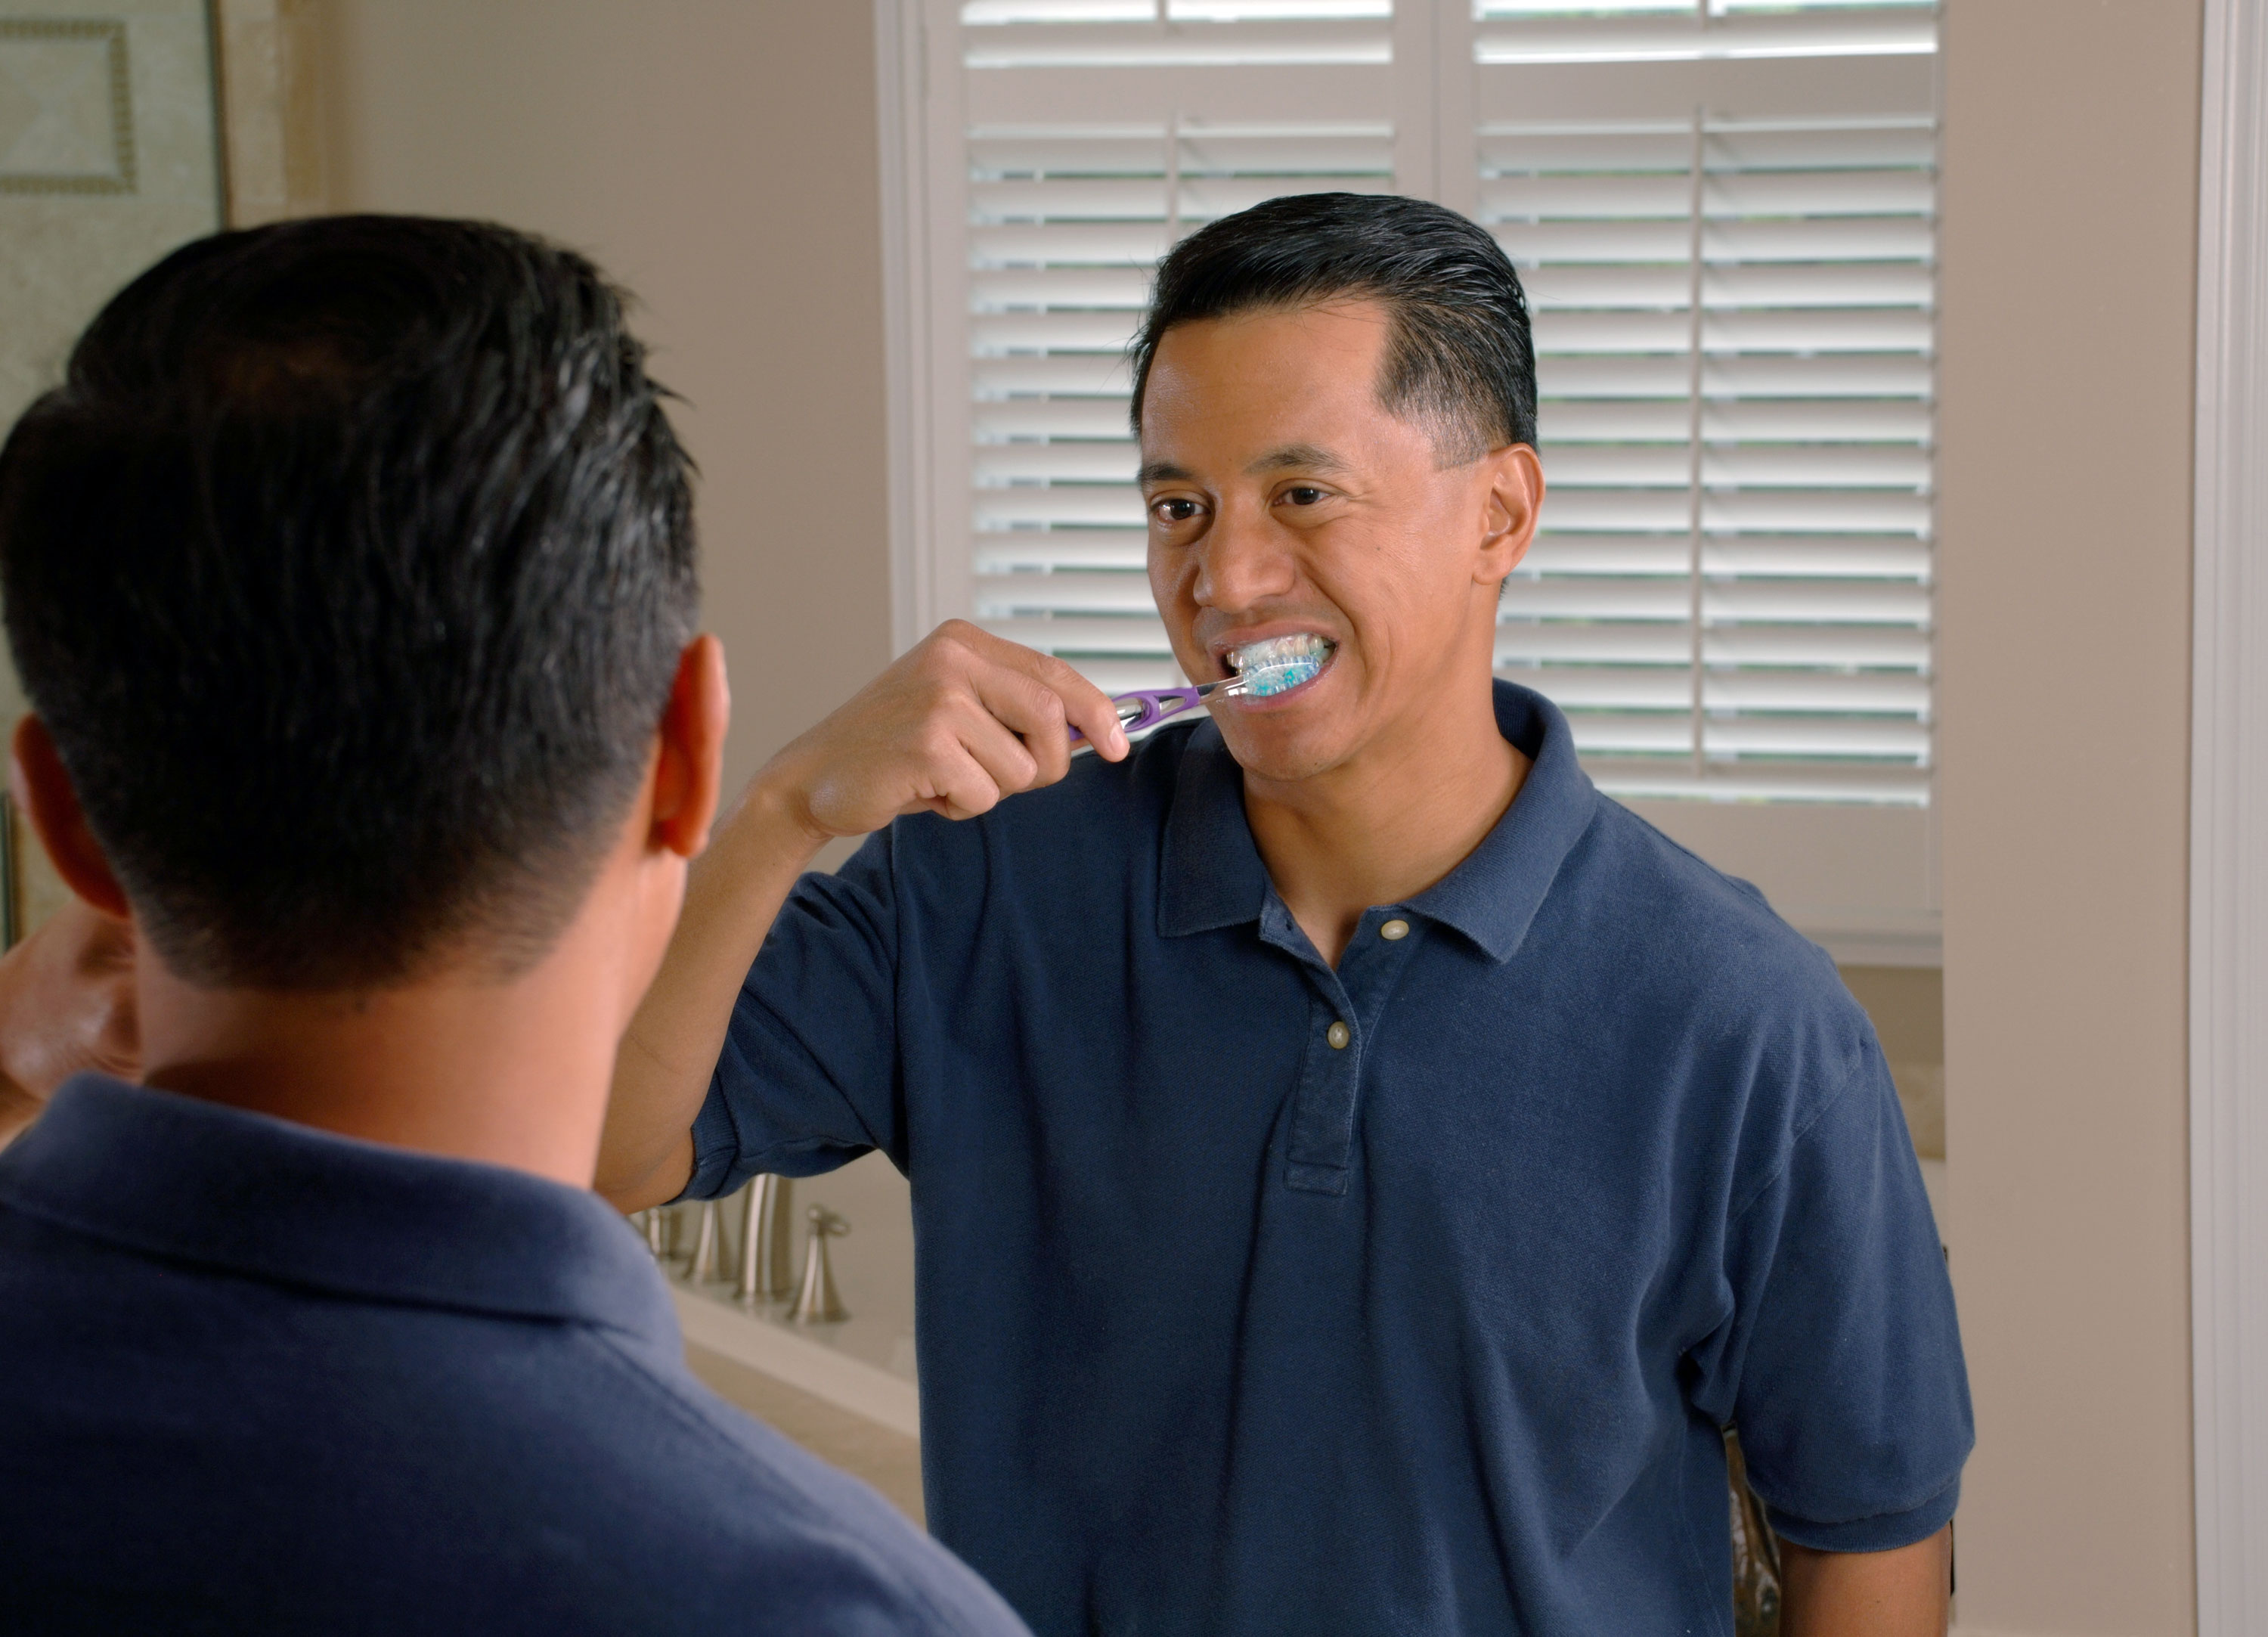 Brushing teeth can prevent gum disease